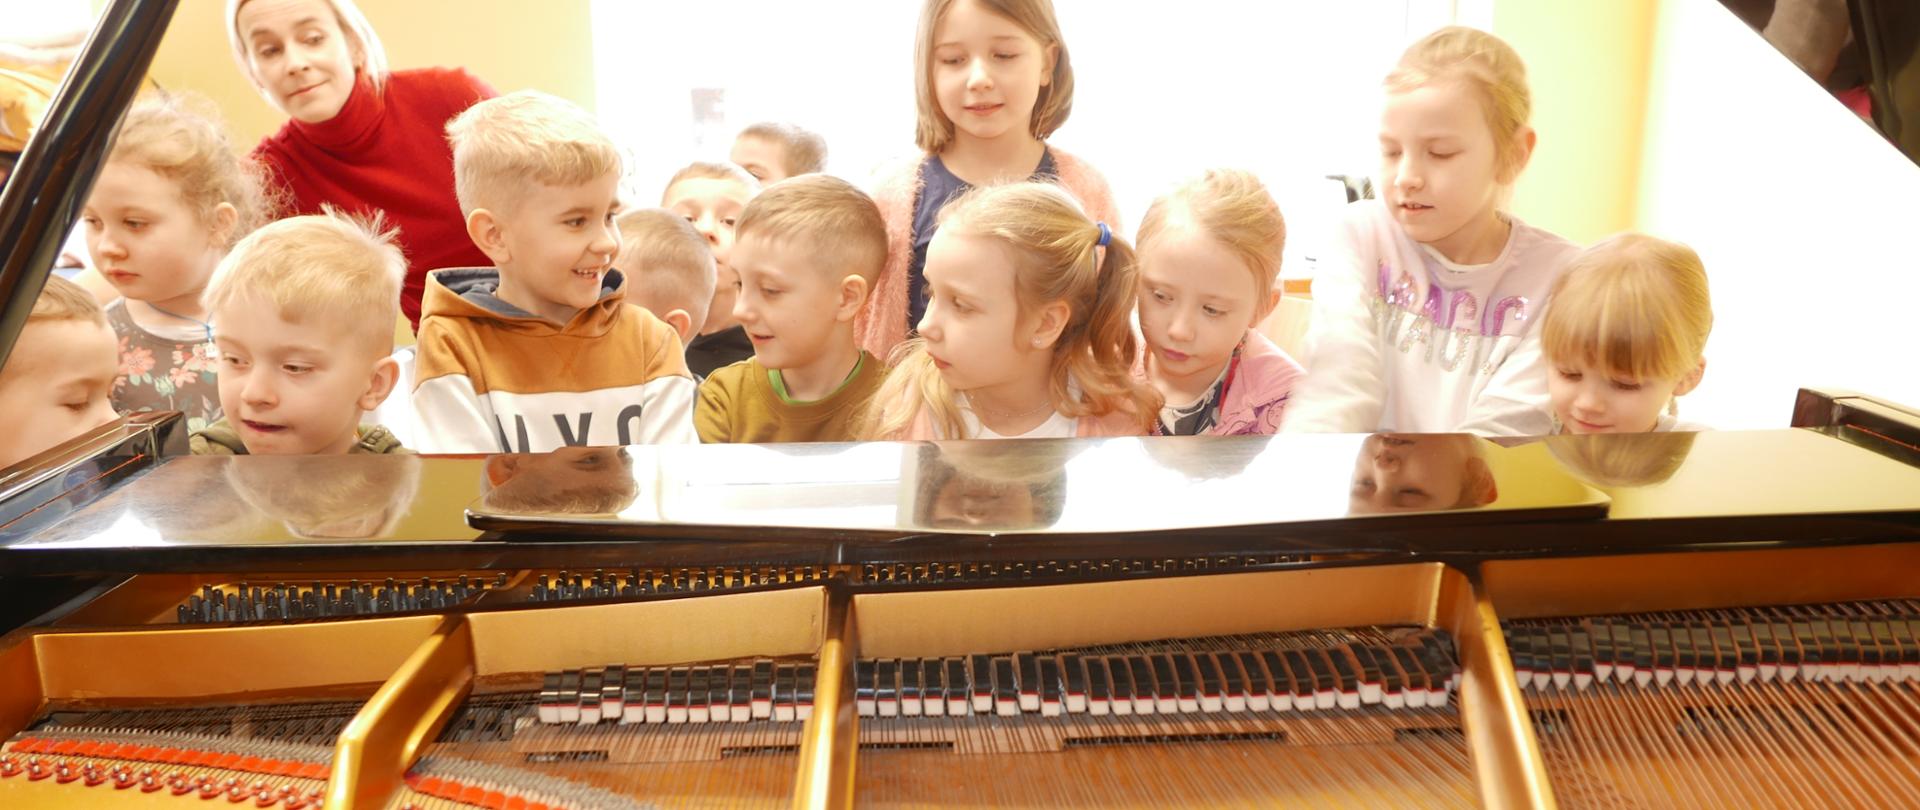 Zdjęcie zrobione z tyłu fortepianu. Klapa jest otwarta i widać struny. Przy klawiaturze siedzi grupa dzieci.